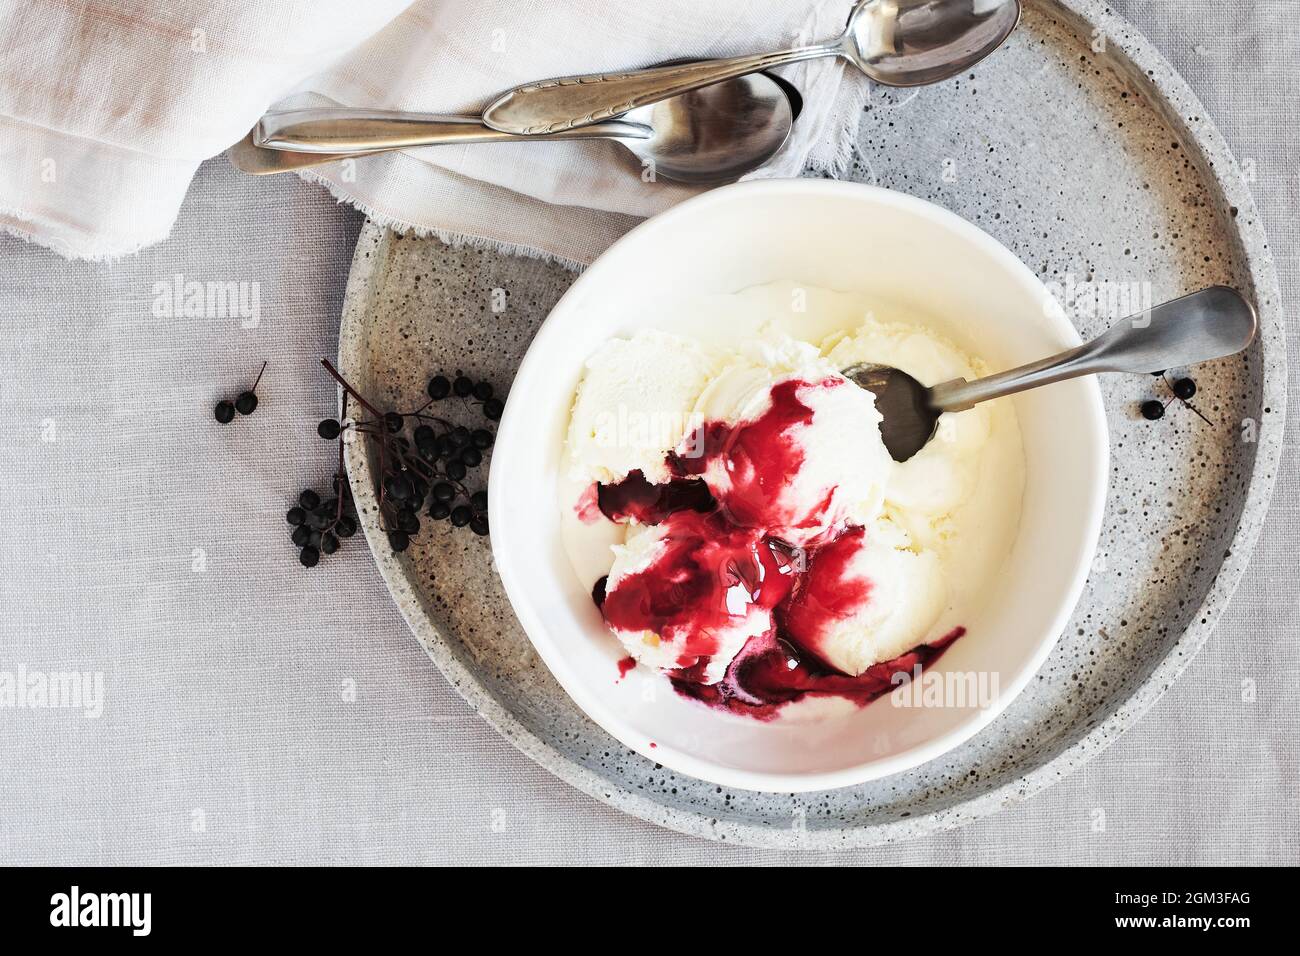 Glace à la vanille et sauce aux baies de sureau dans un bol sur une nappe en lin, vue du dessus. Banque D'Images